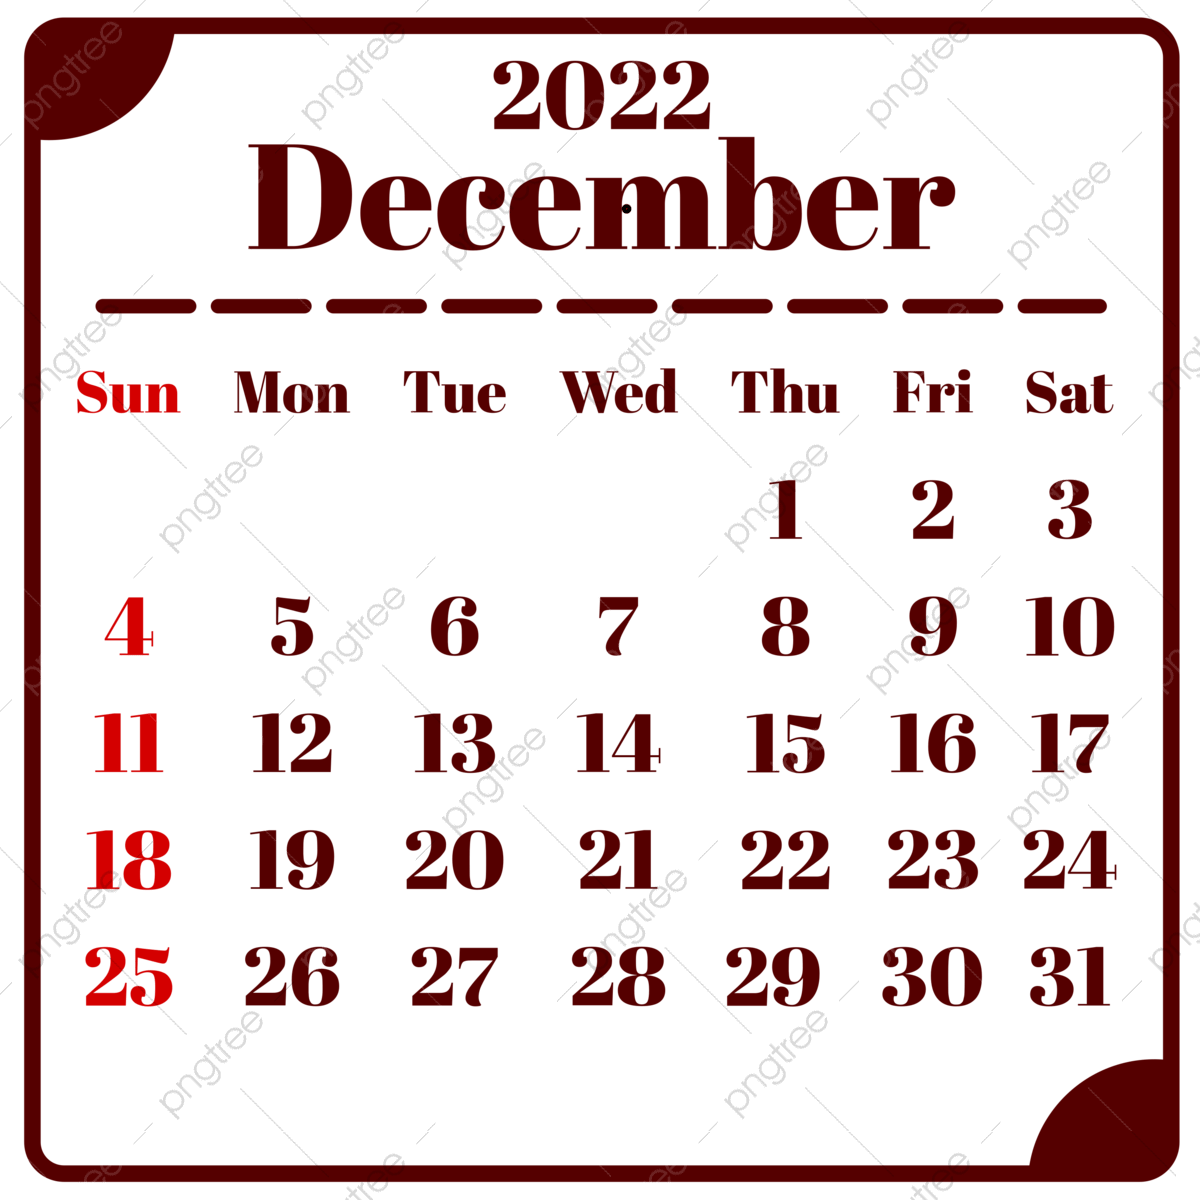 December calendar png transparent images free download vector files